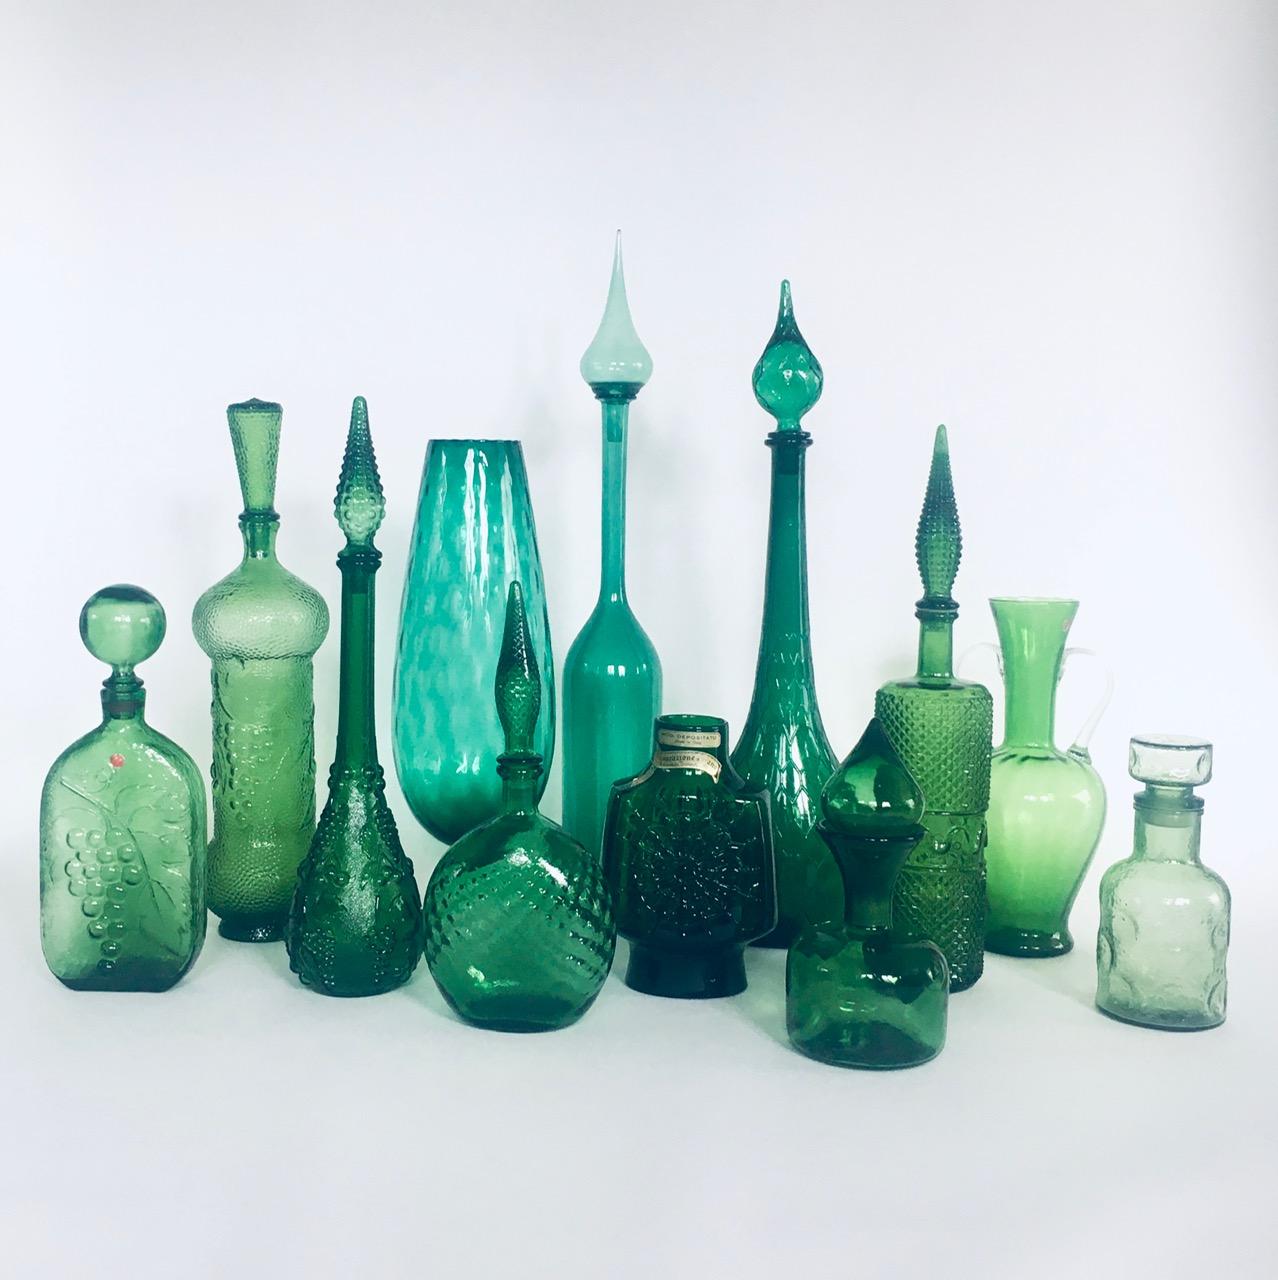 Sammlung von Vasen und Karaffen aus grünem Glas. Alle stammen aus der Zeit der 1960er Jahre. Italien und Frankreich gemacht. Empoli und anderes Designglas. Satz mit 12 verschiedenen Teilen. Alle sind aus grünem Glas in verschiedenen Tönen, Formen